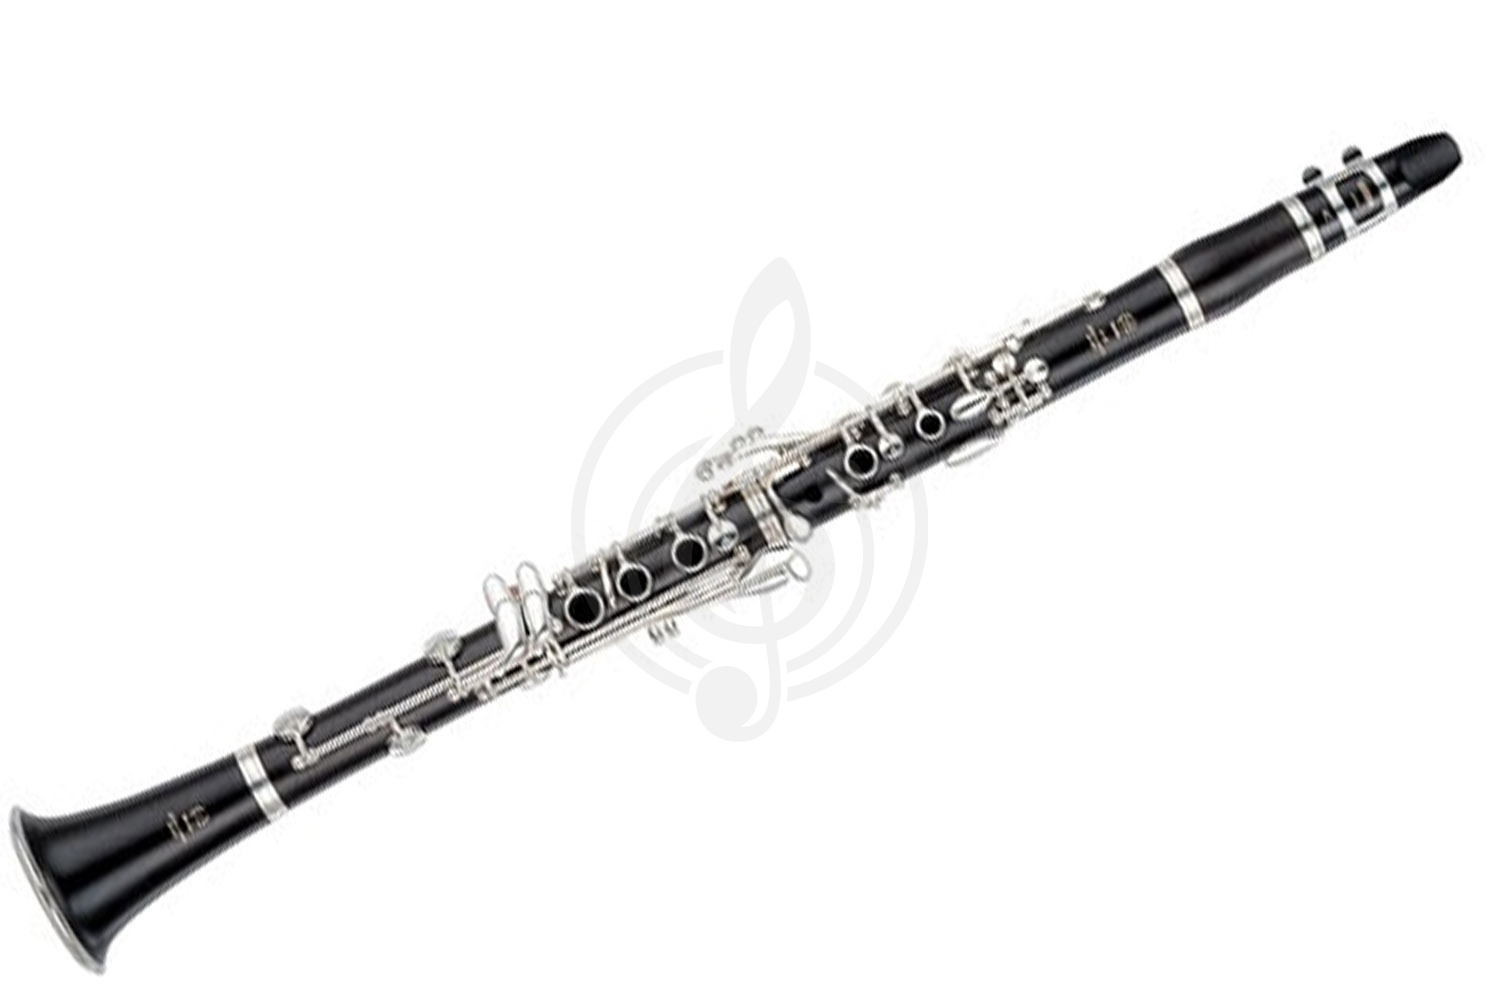 Кларнет Кларнеты Yamaha Yamaha YCL-450E - кларнет in Bb студенческий, чёрное дерево, 17/6,  посеребр. к YCL-450E//03 - фото 1